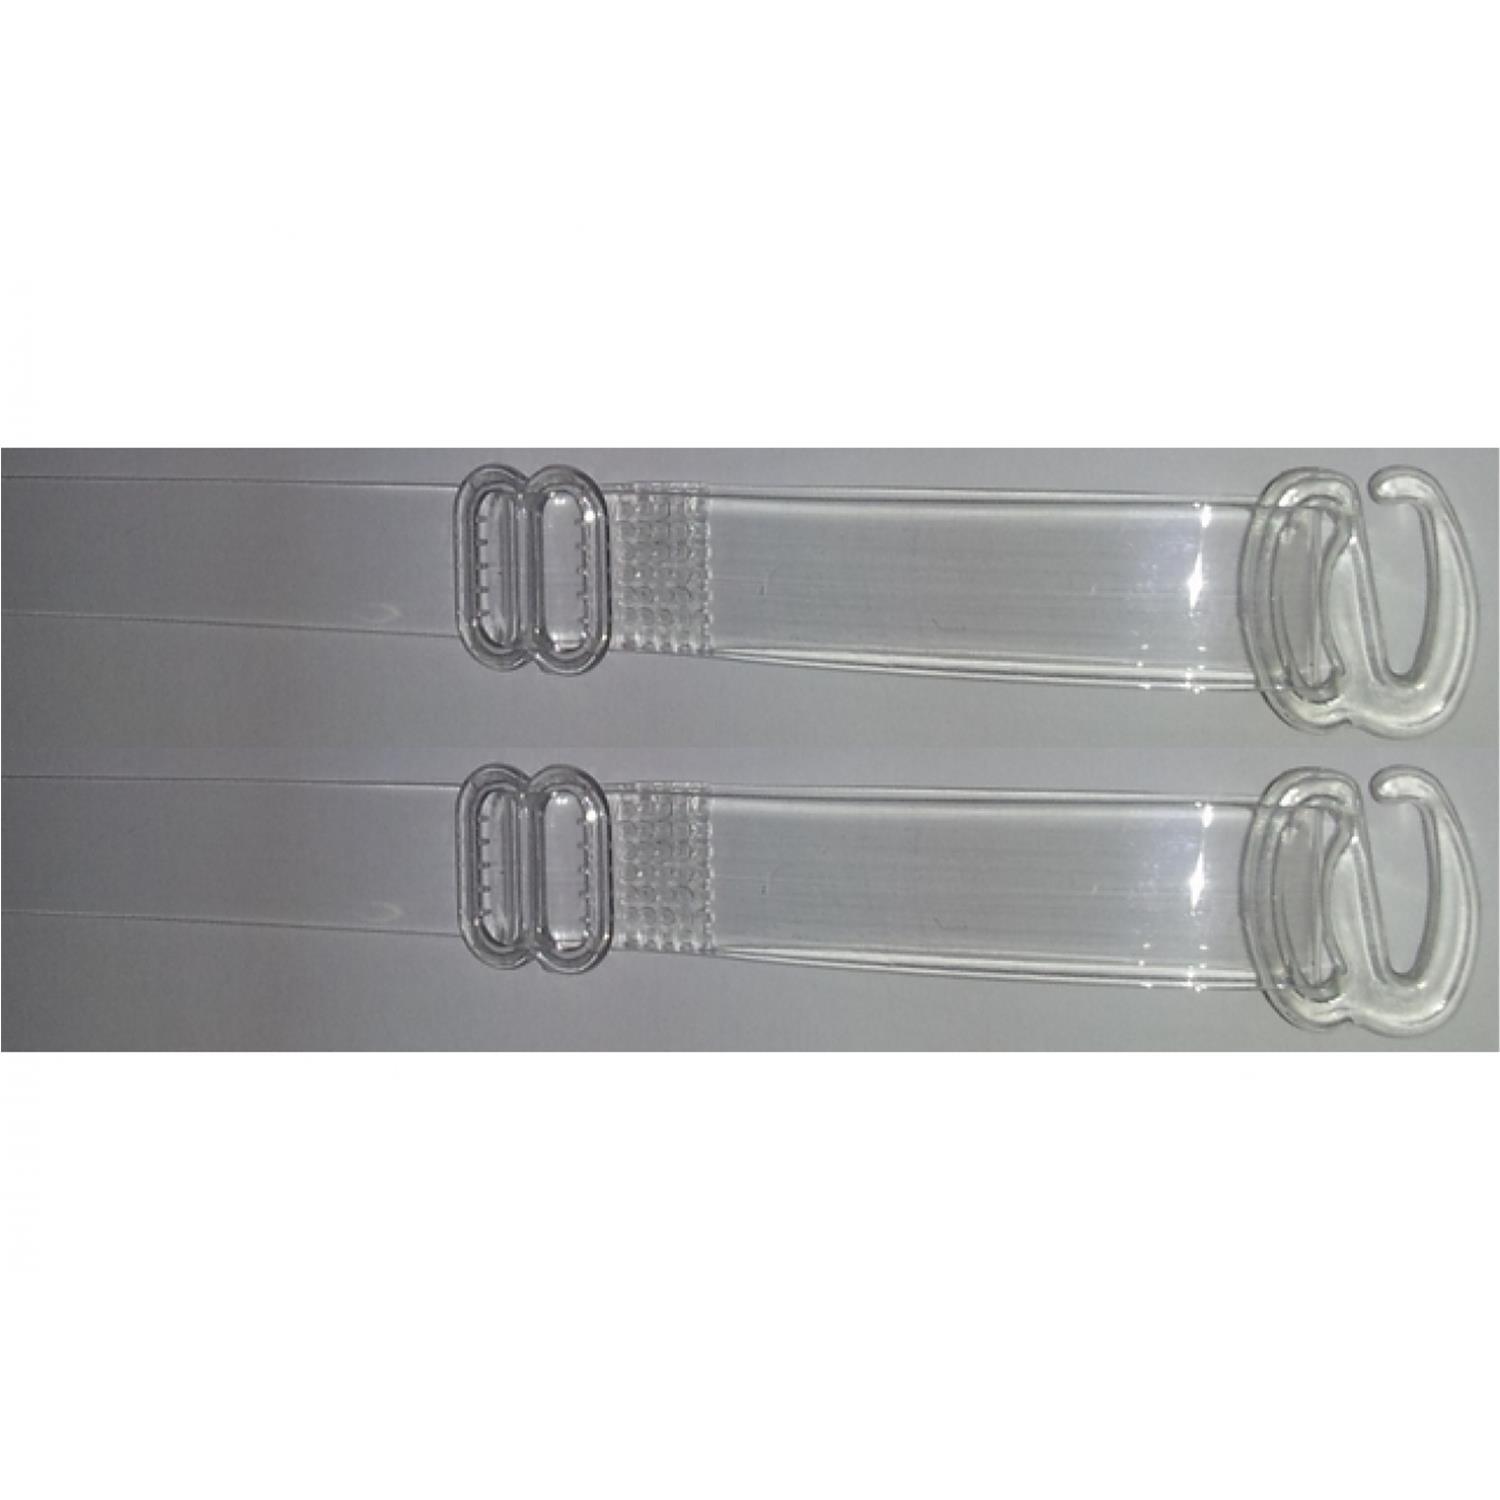 BH Träger / Silikonträger, transparent, 10mm breit